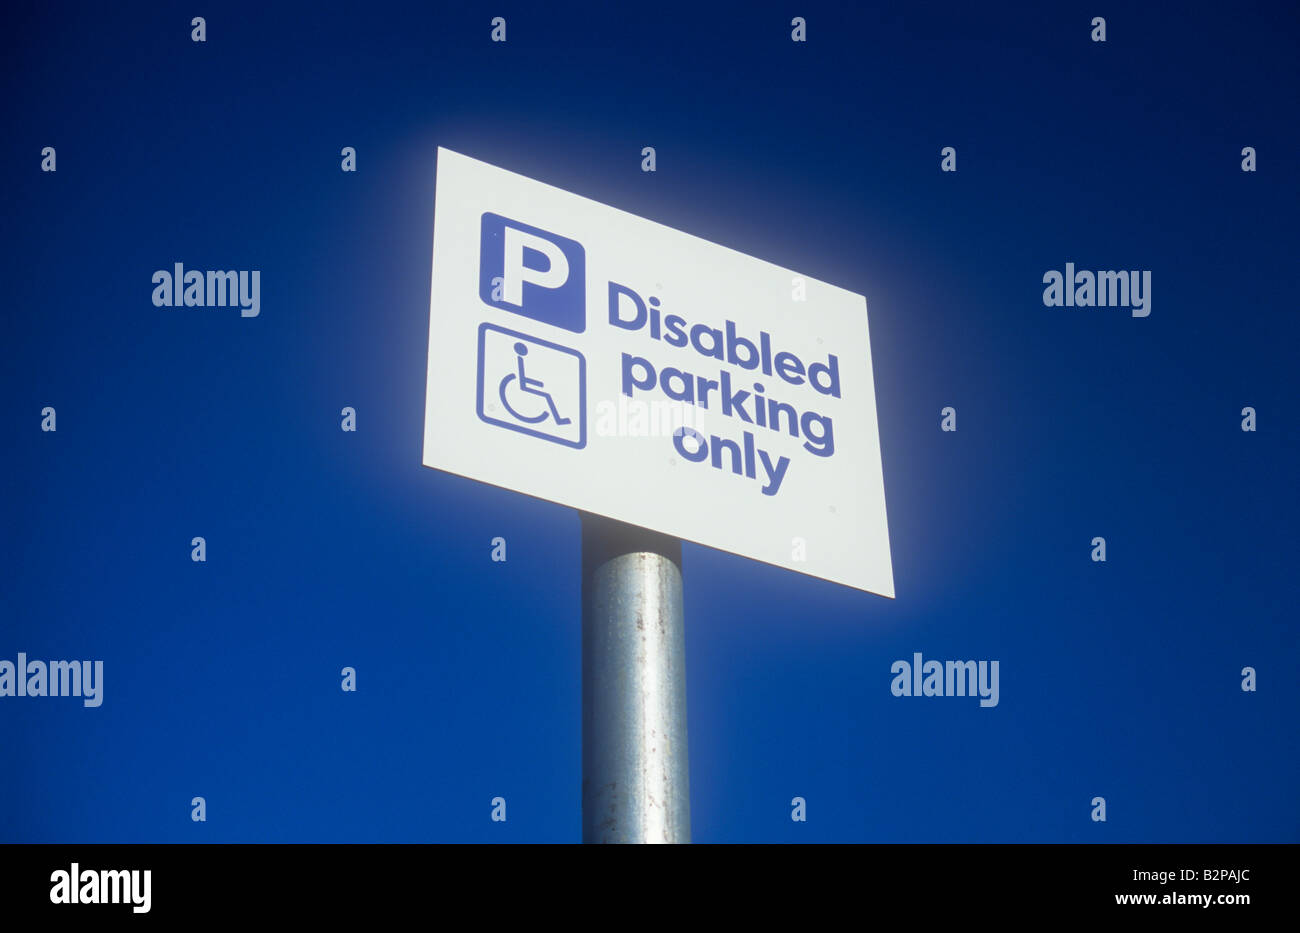 Signe blanc et bleu argent sur poteau avec ciel bleu profond et symbole de personne en fauteuil roulant indiquant P Mobilité parking only Banque D'Images